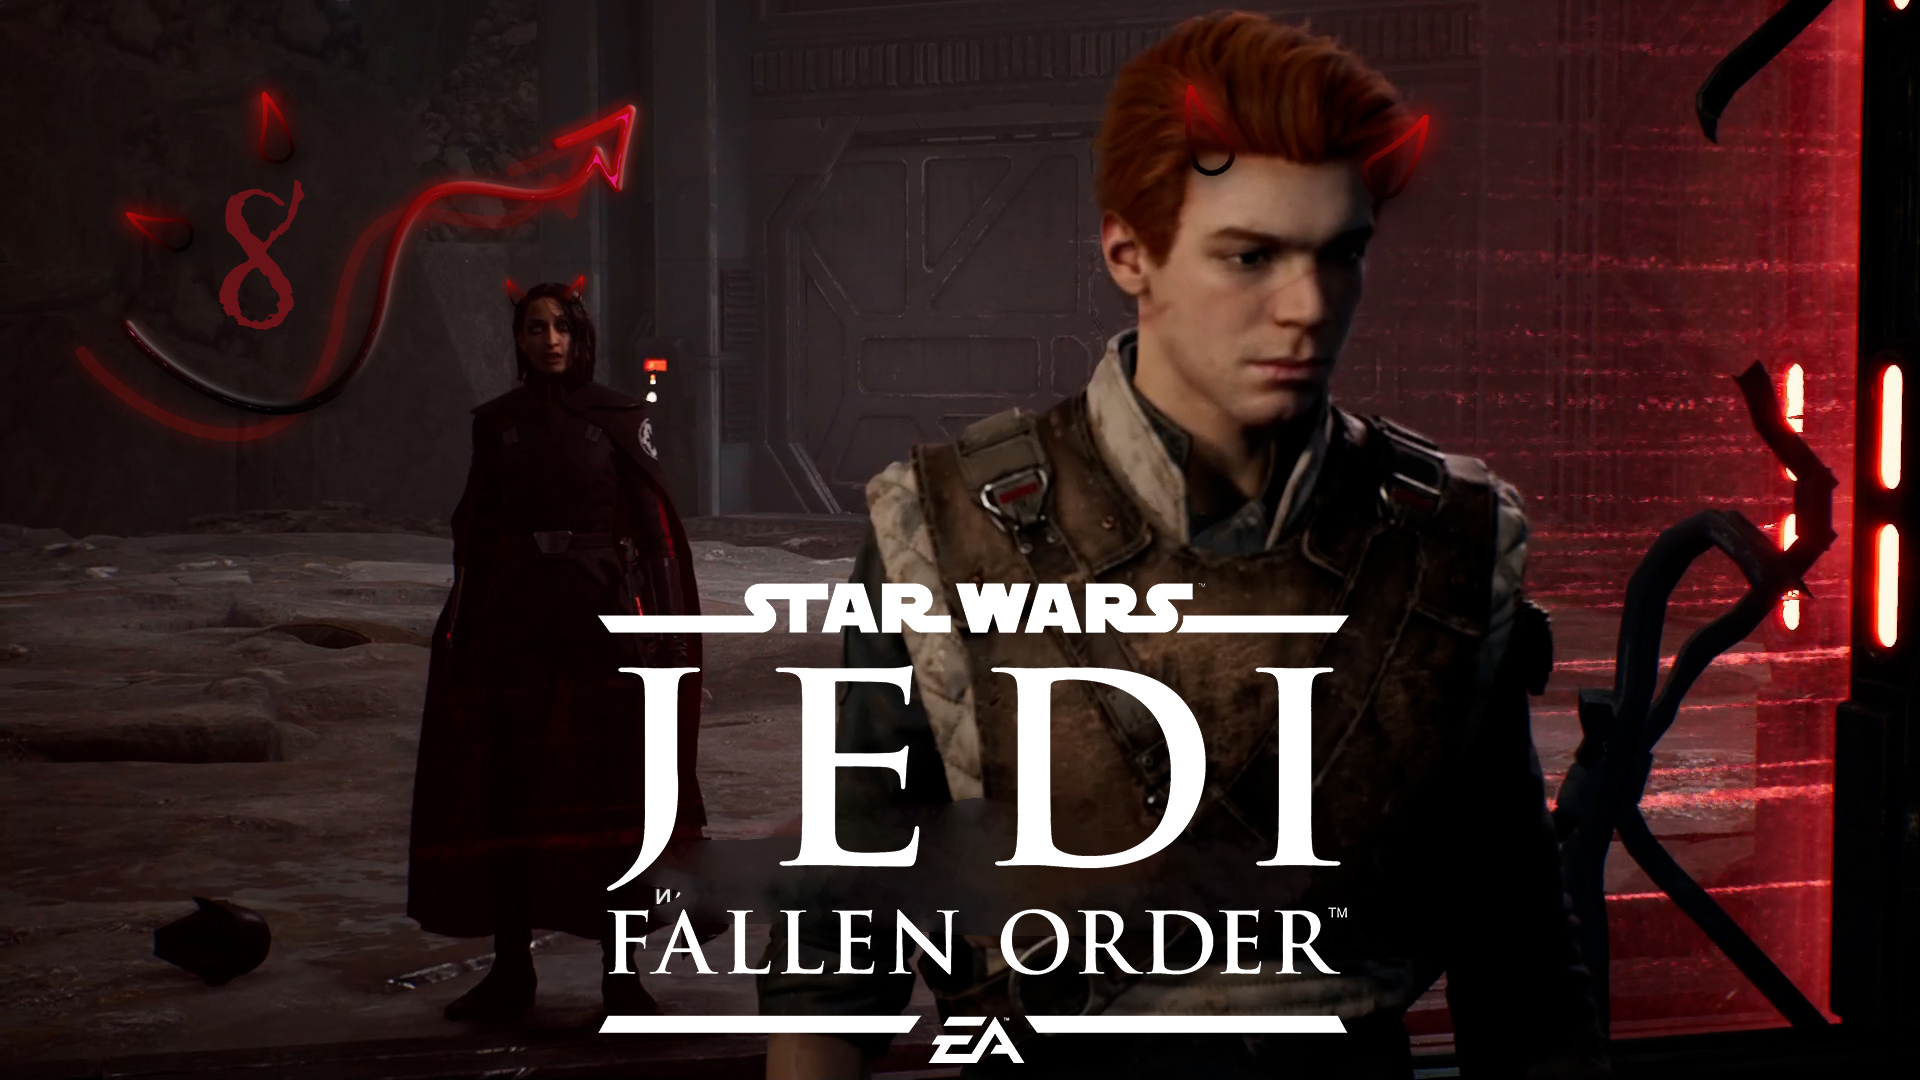 Star Wars Jedi  Fallen Order ❤ 8 серия ❤ Темная сторона - это когда синяки под глазами.